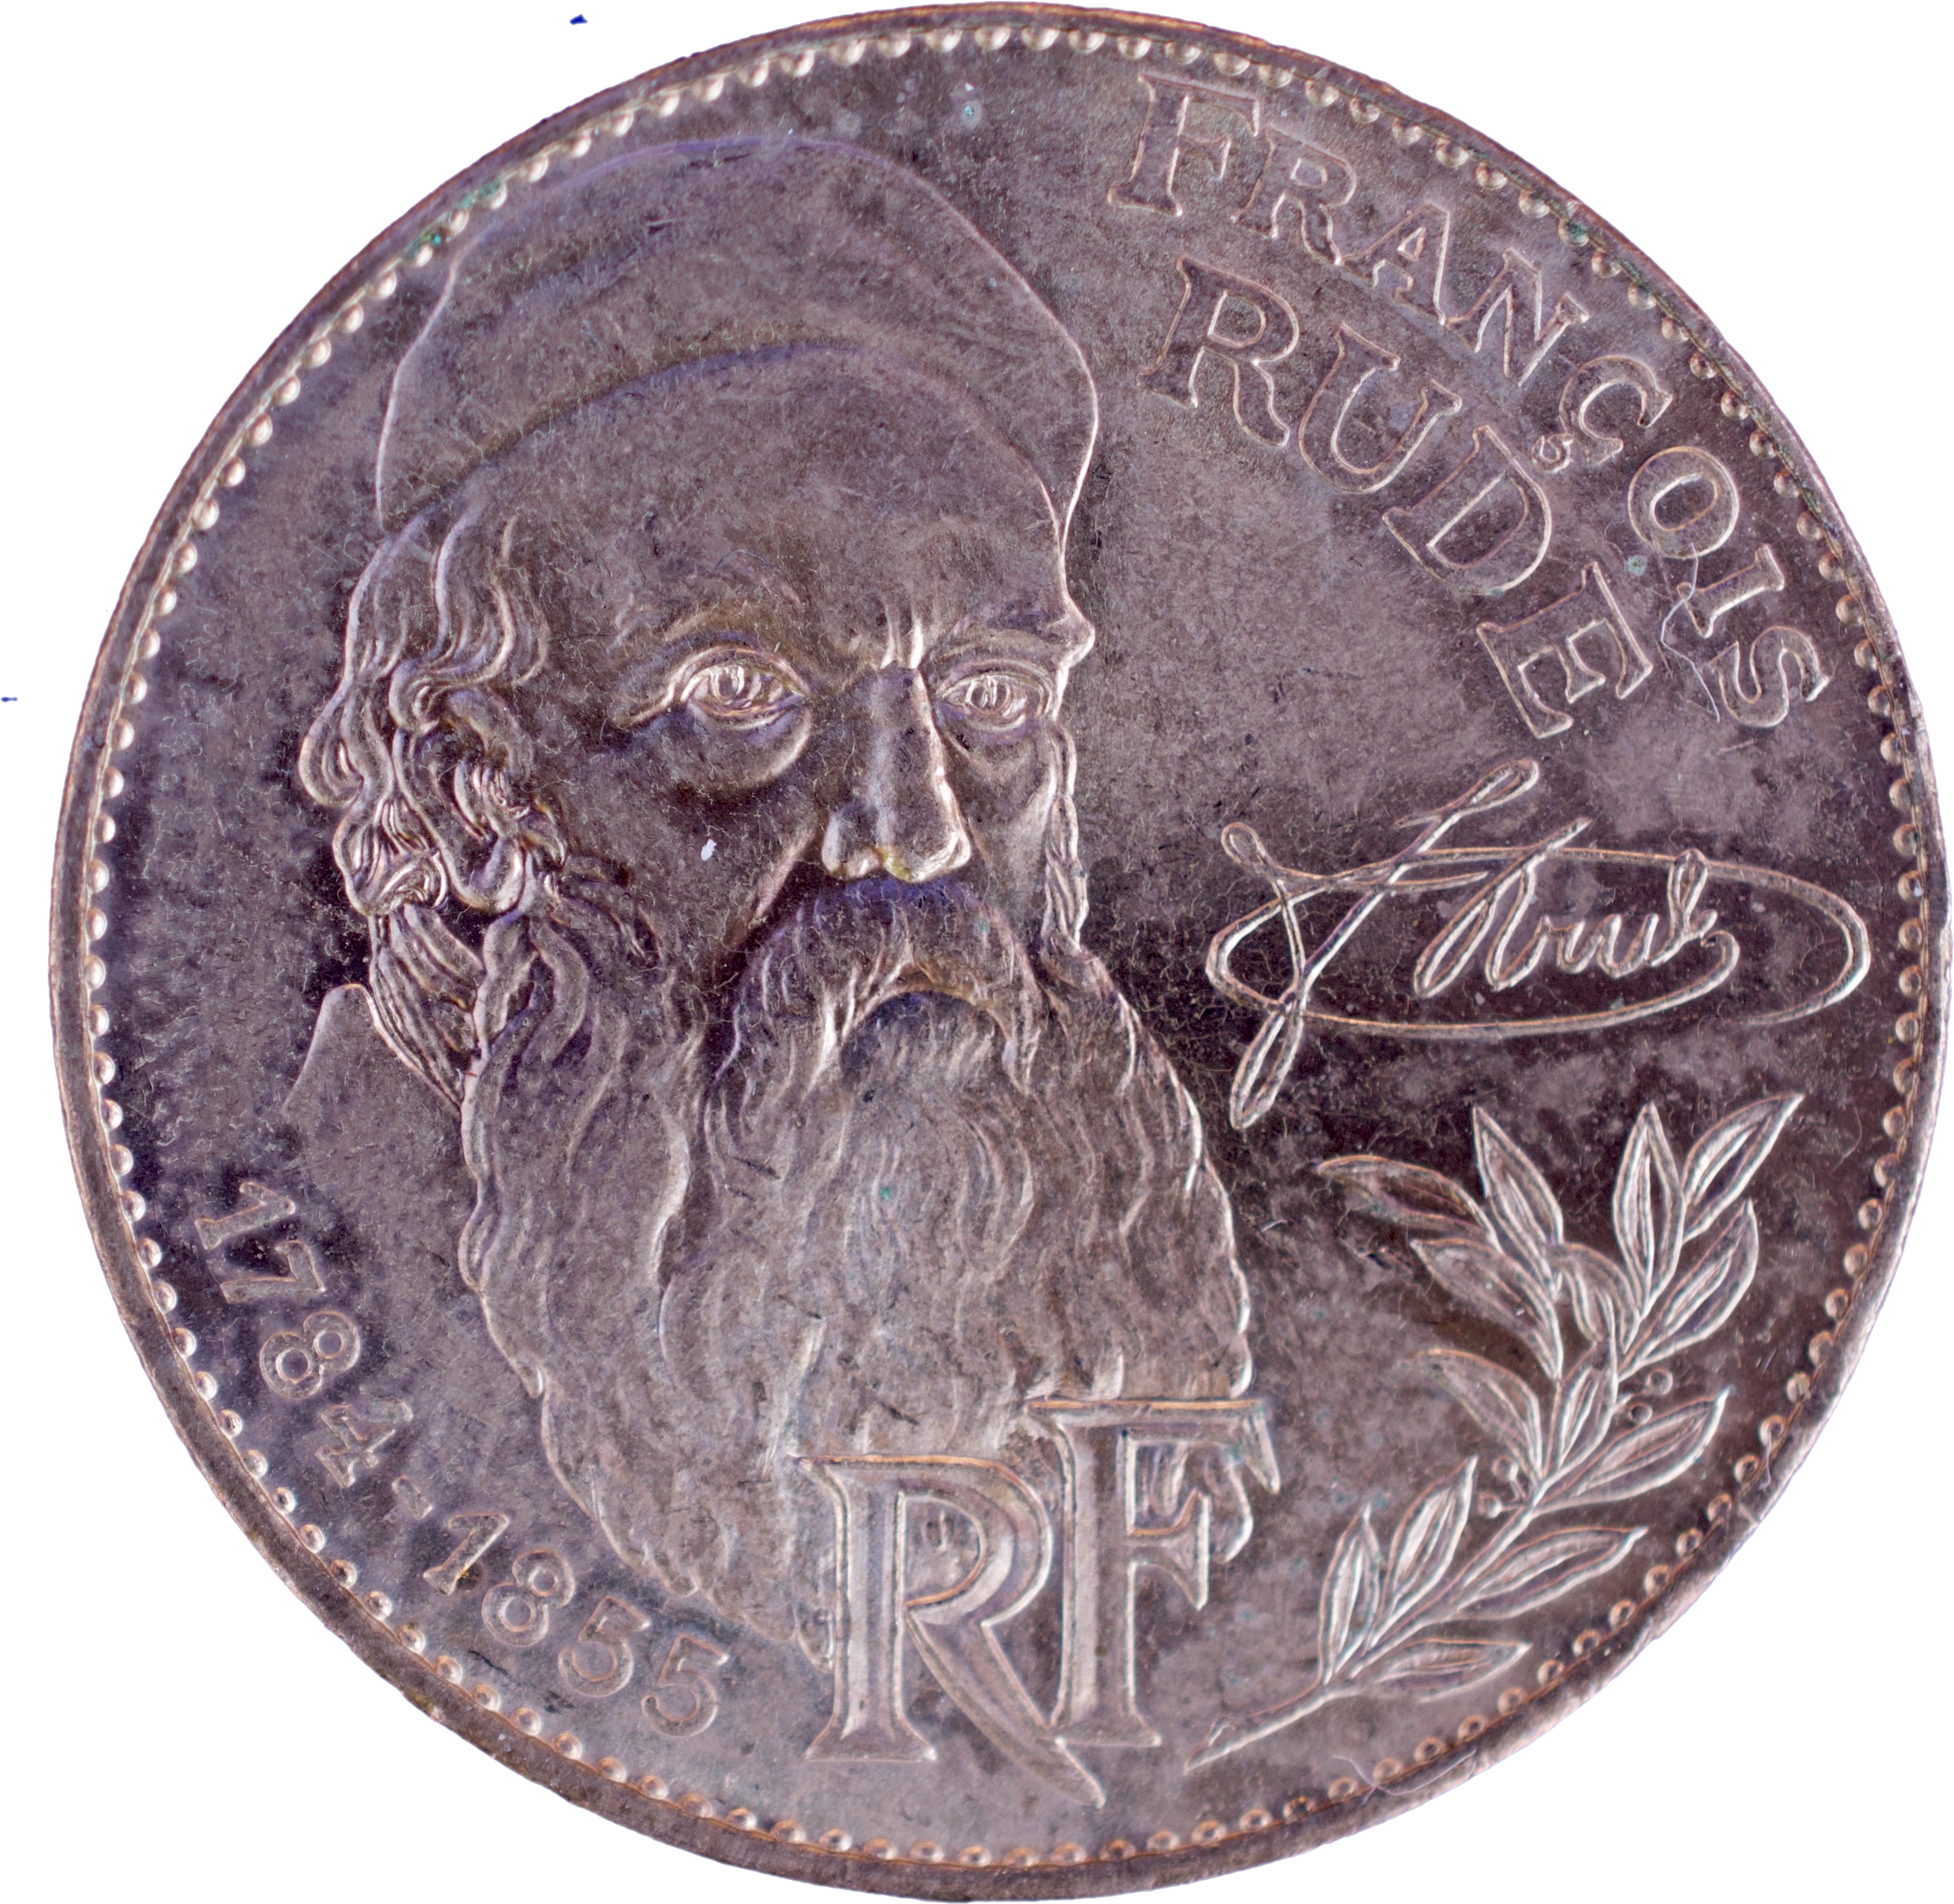 10 francs François Rude 1984 droit